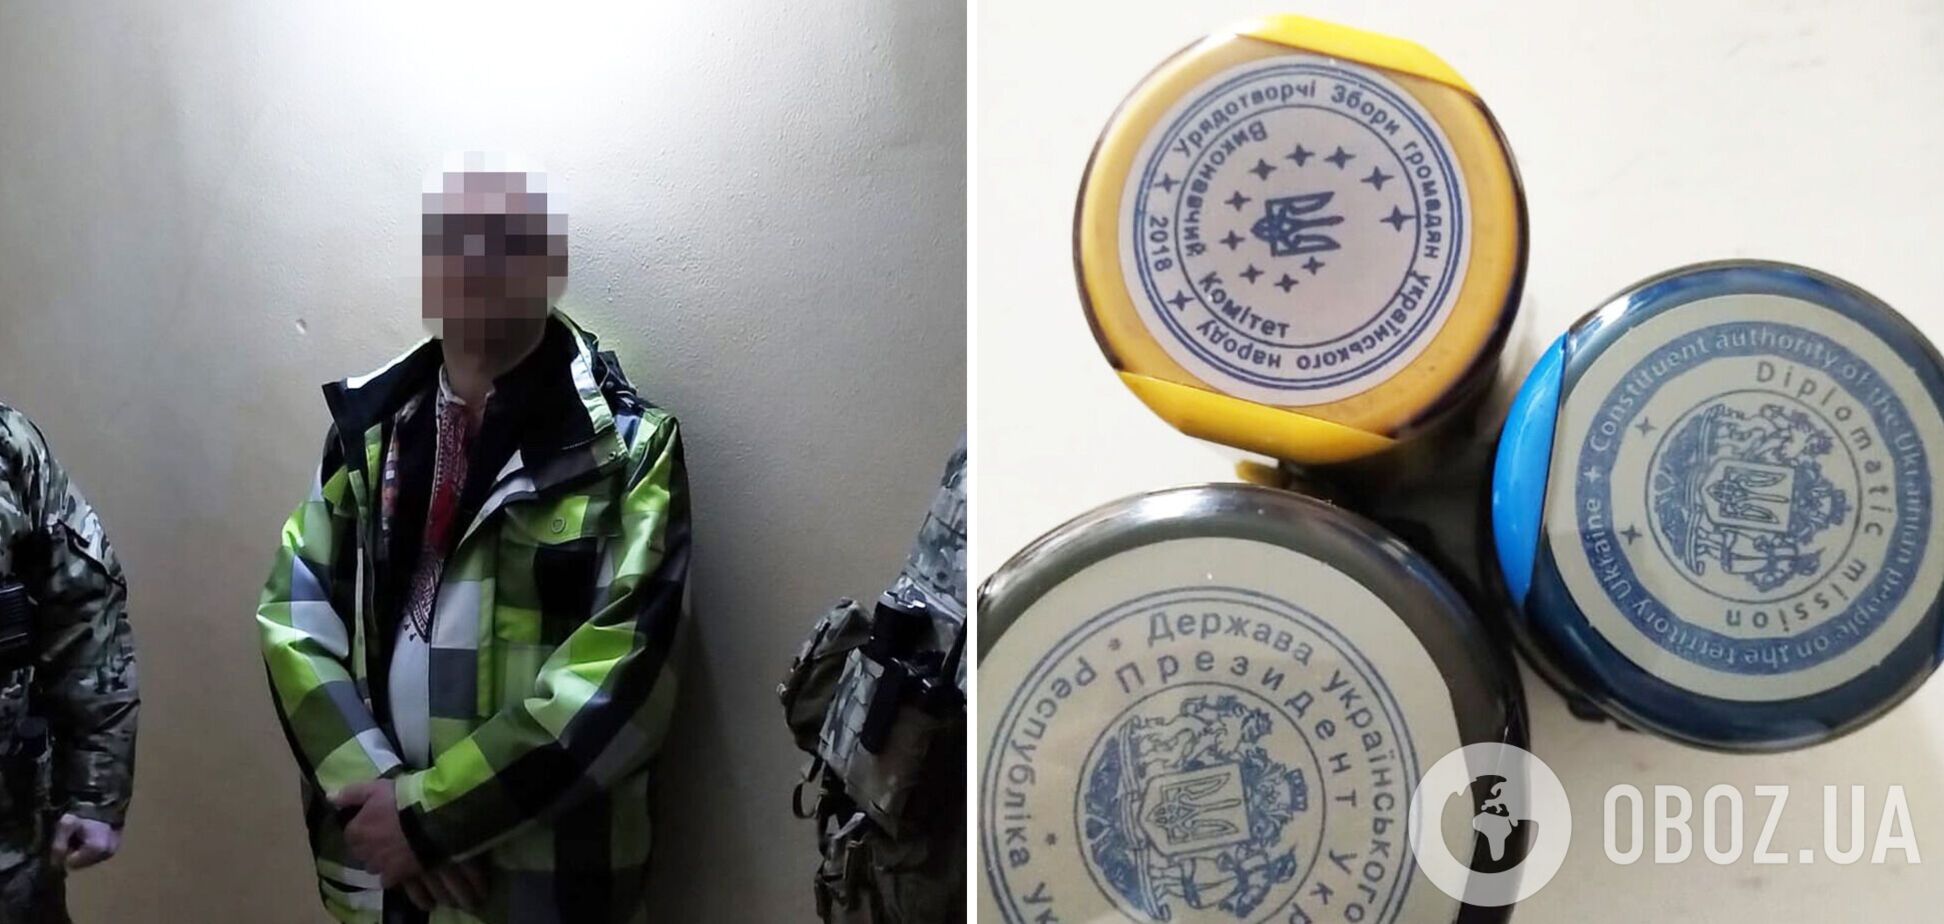 СБУ задержала в Днепре фейкового 'президента Украины', который планировал свержение власти. Фото